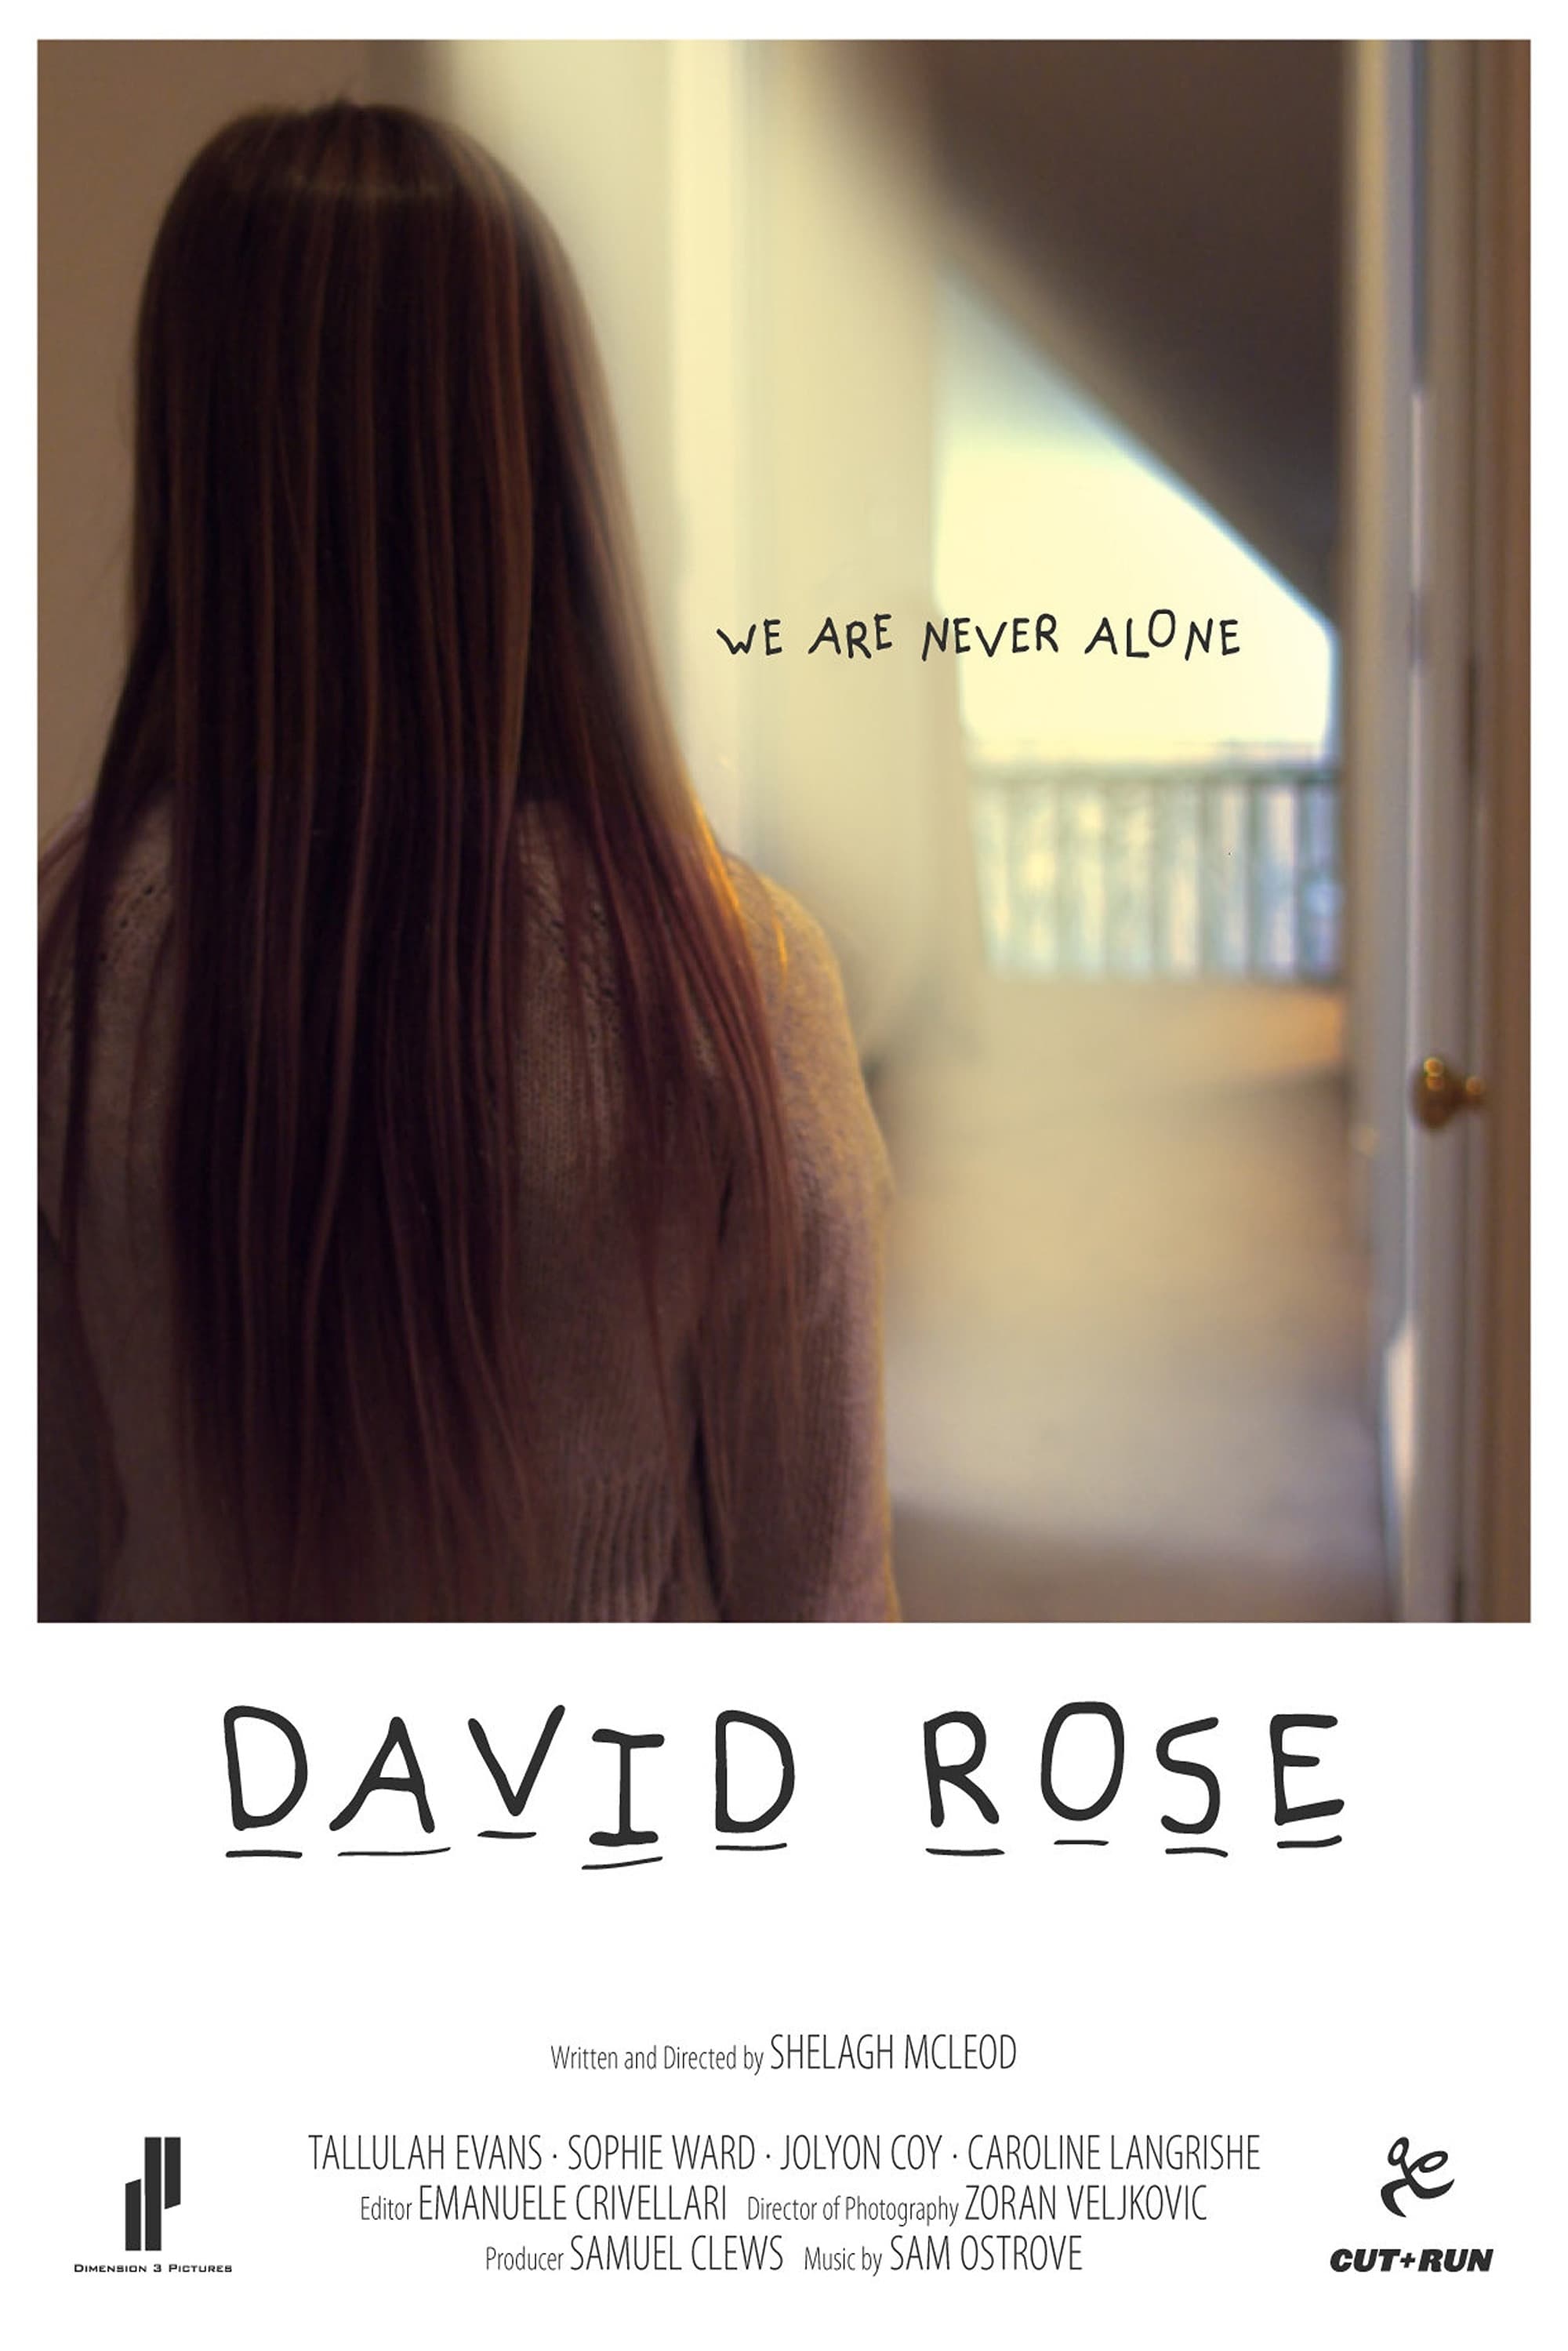 David Rose film